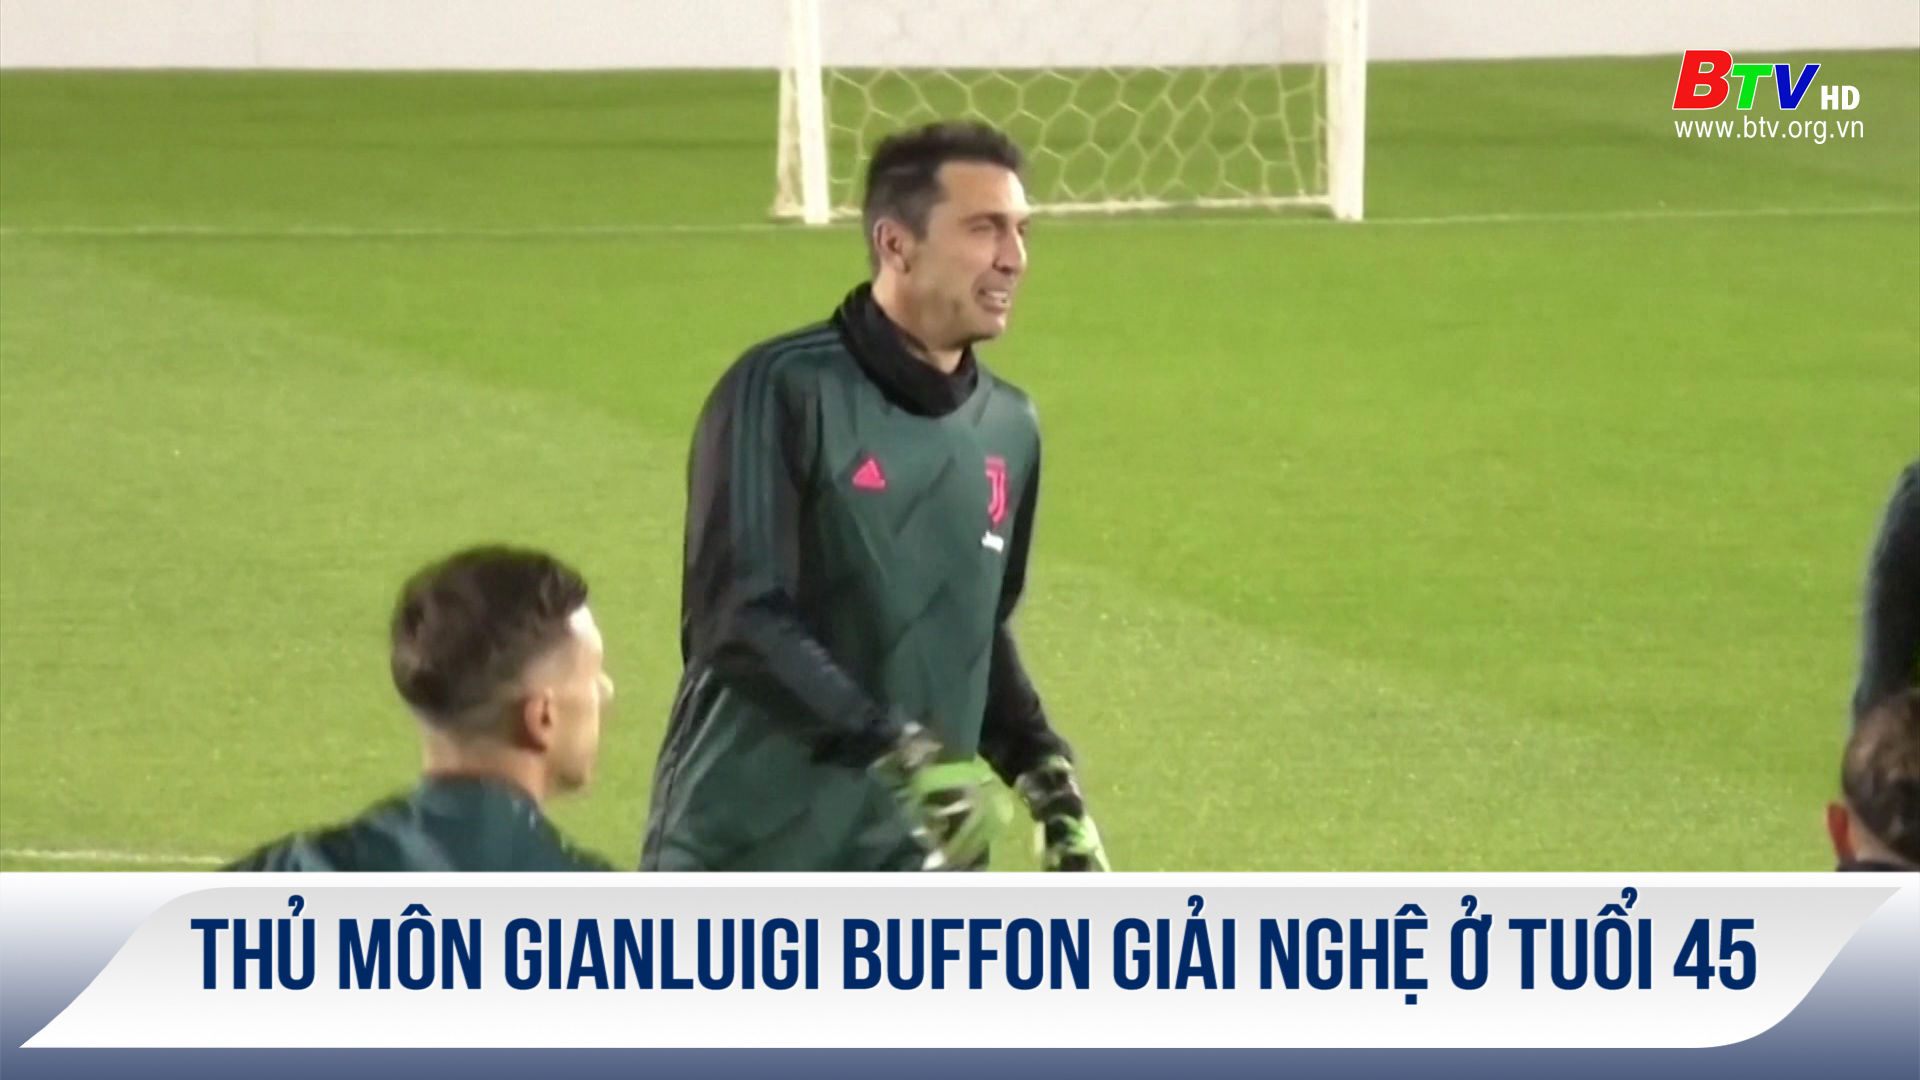 Thủ môn Gianluigi Buffon giải nghệ ở tuổi 45